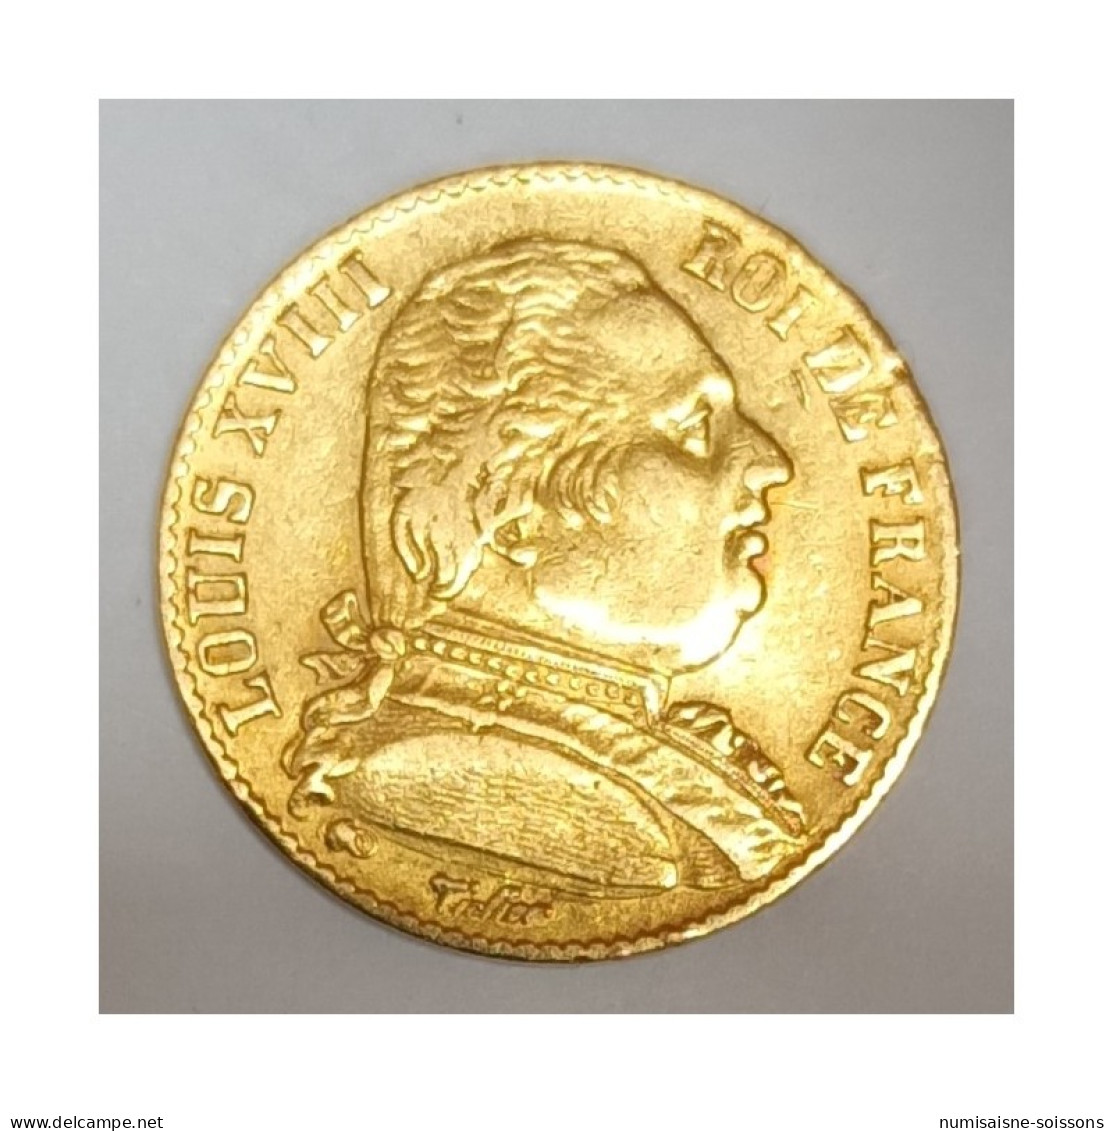 GADOURY 1026 - 20 FRANCS 1814 A - OR - LOUIS XVIII - BUSTE HABILLE - KM 706.1 - TTB - 20 Francs (gold)